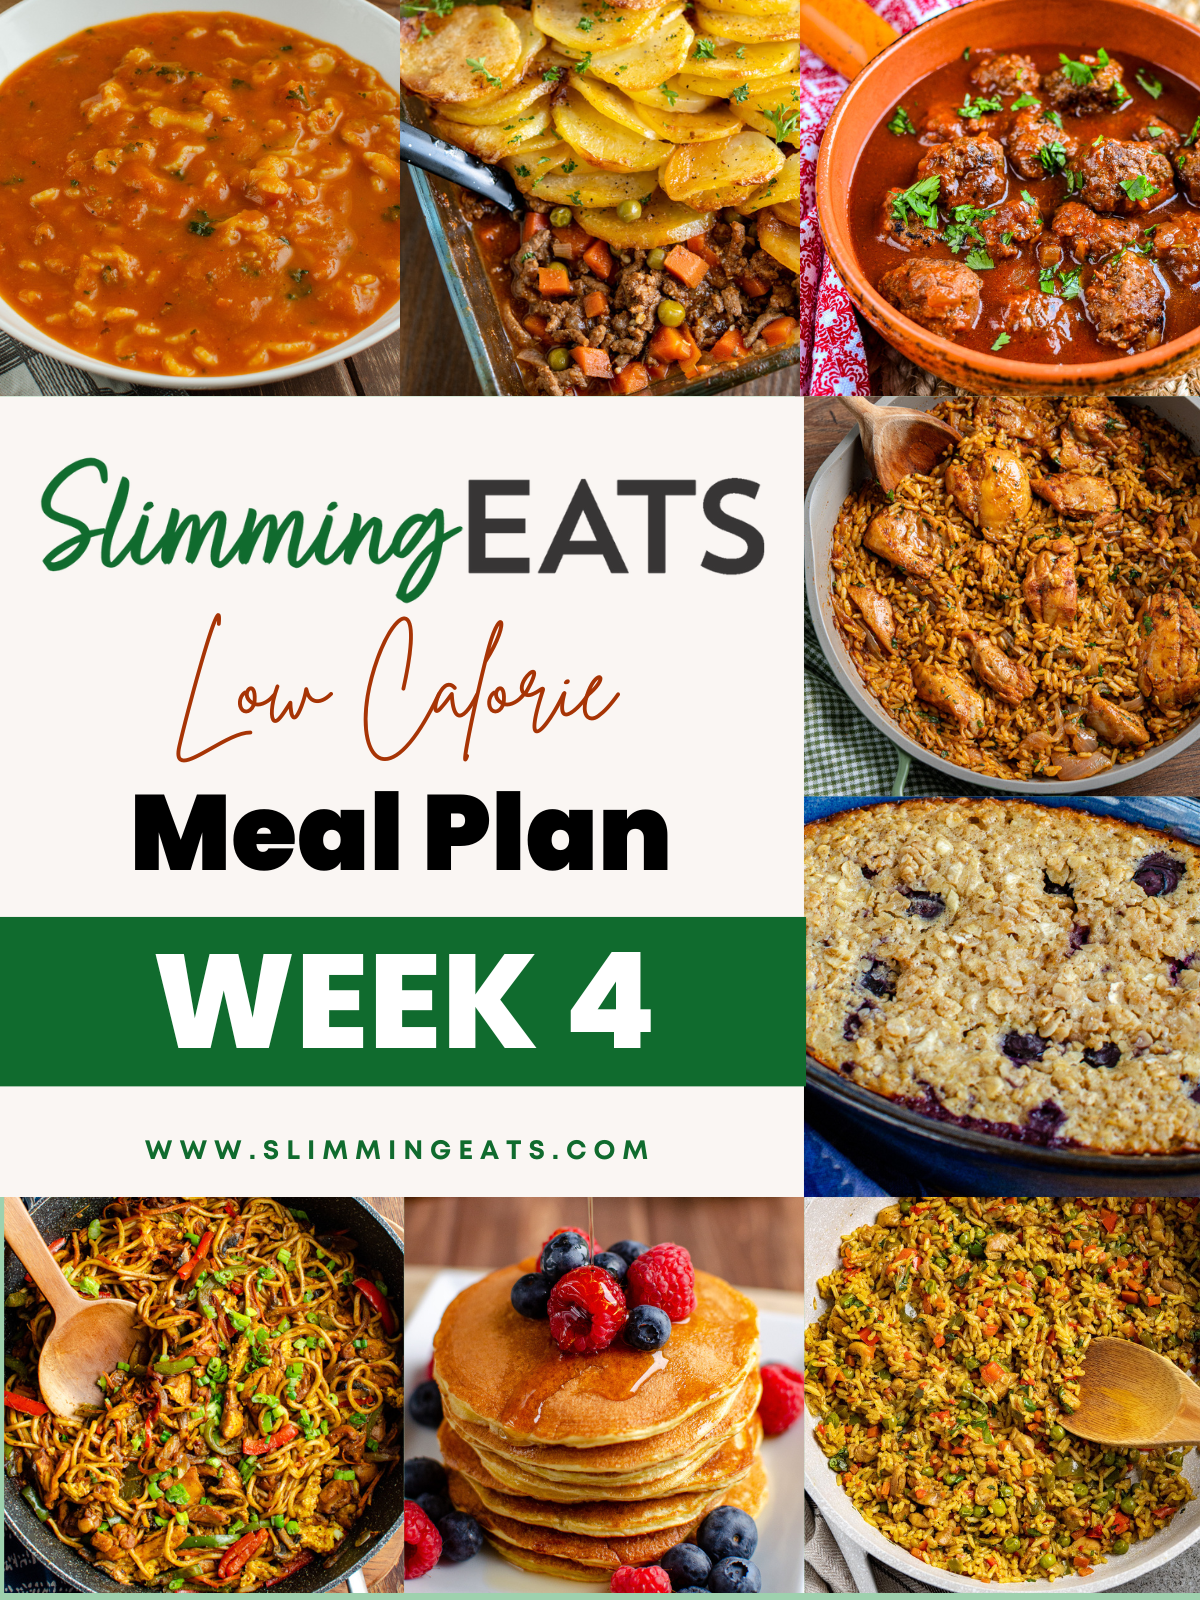 slimming eats week 4 featured image